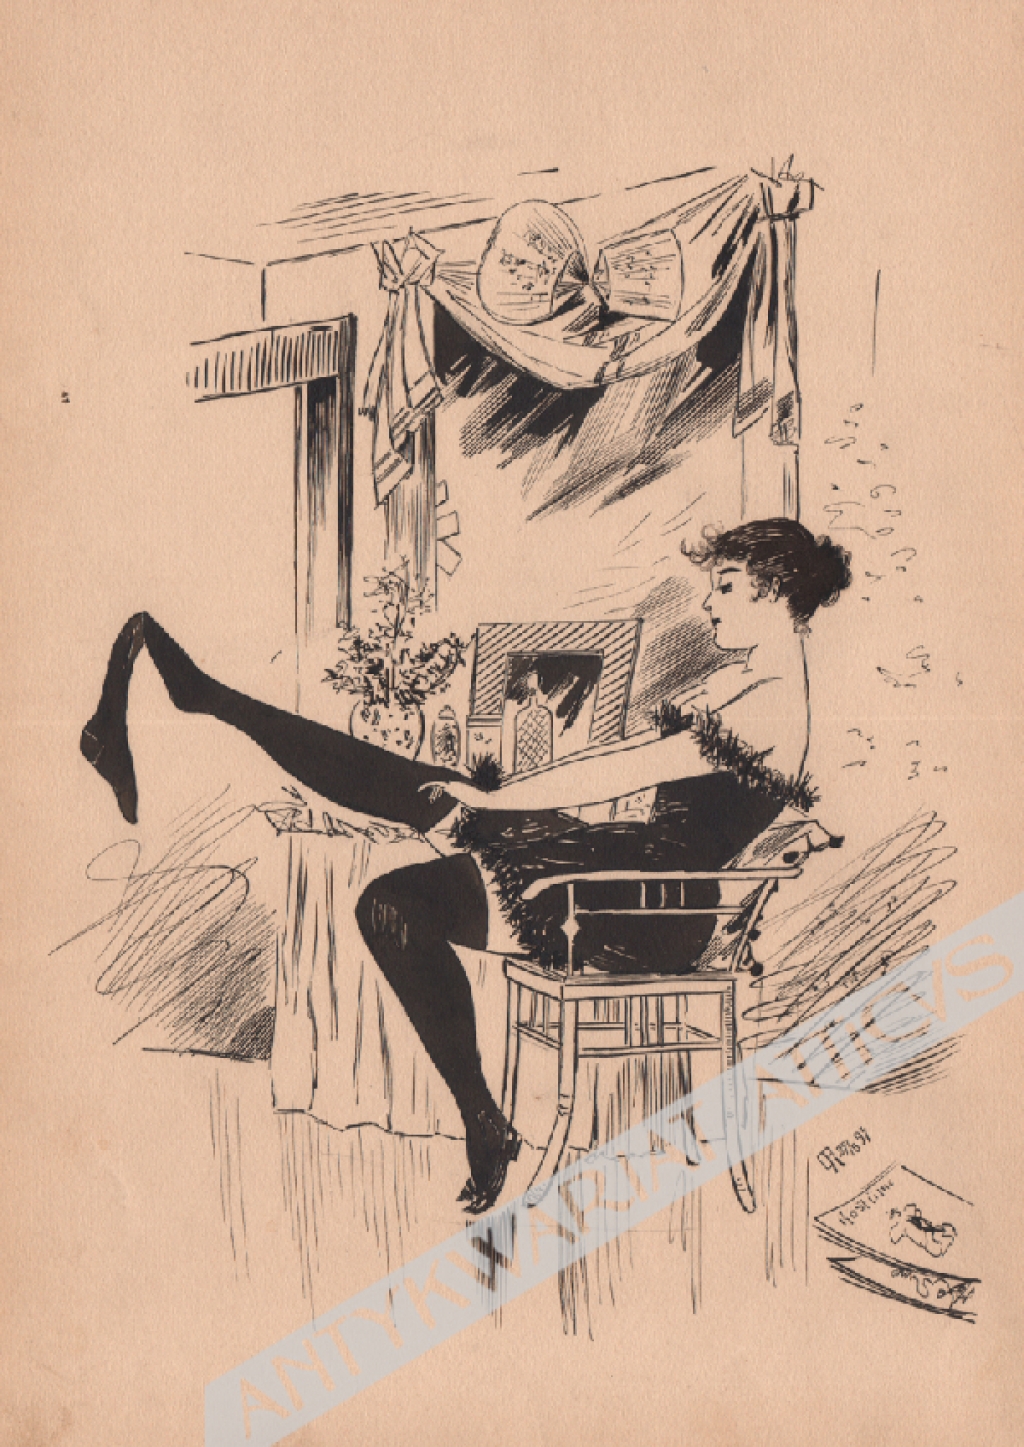 [rysunek piórkiem, 1893] [pończochy nakładająca kobieta w buduarze]